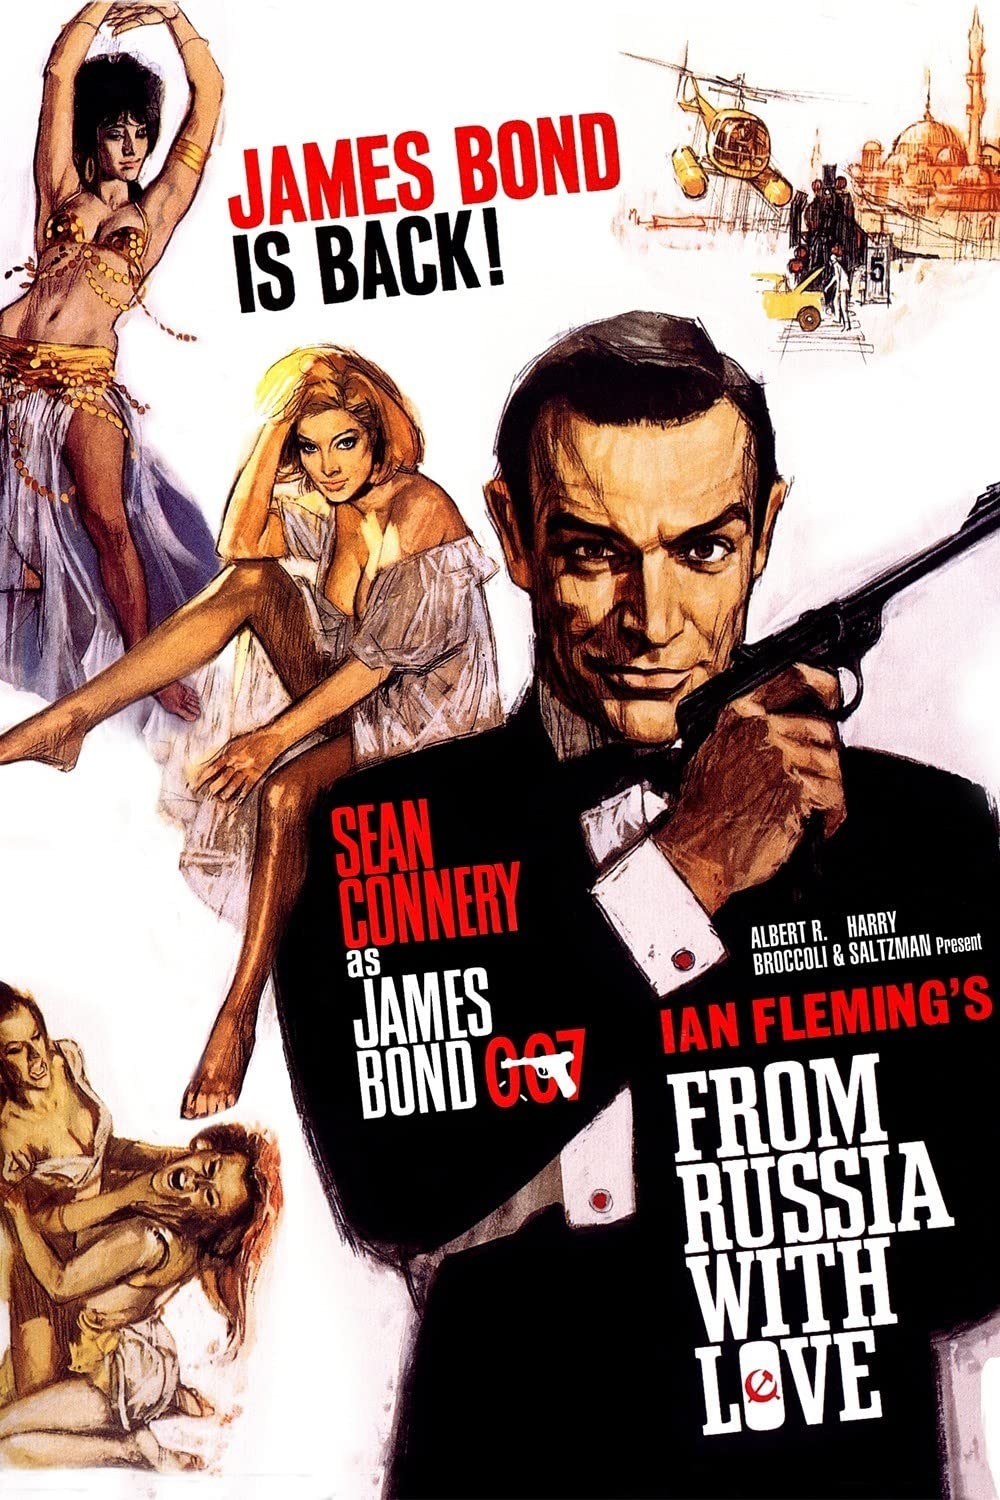 007 ロシアより愛をこめて | ジェームズ・ボンド Wiki | Fandom